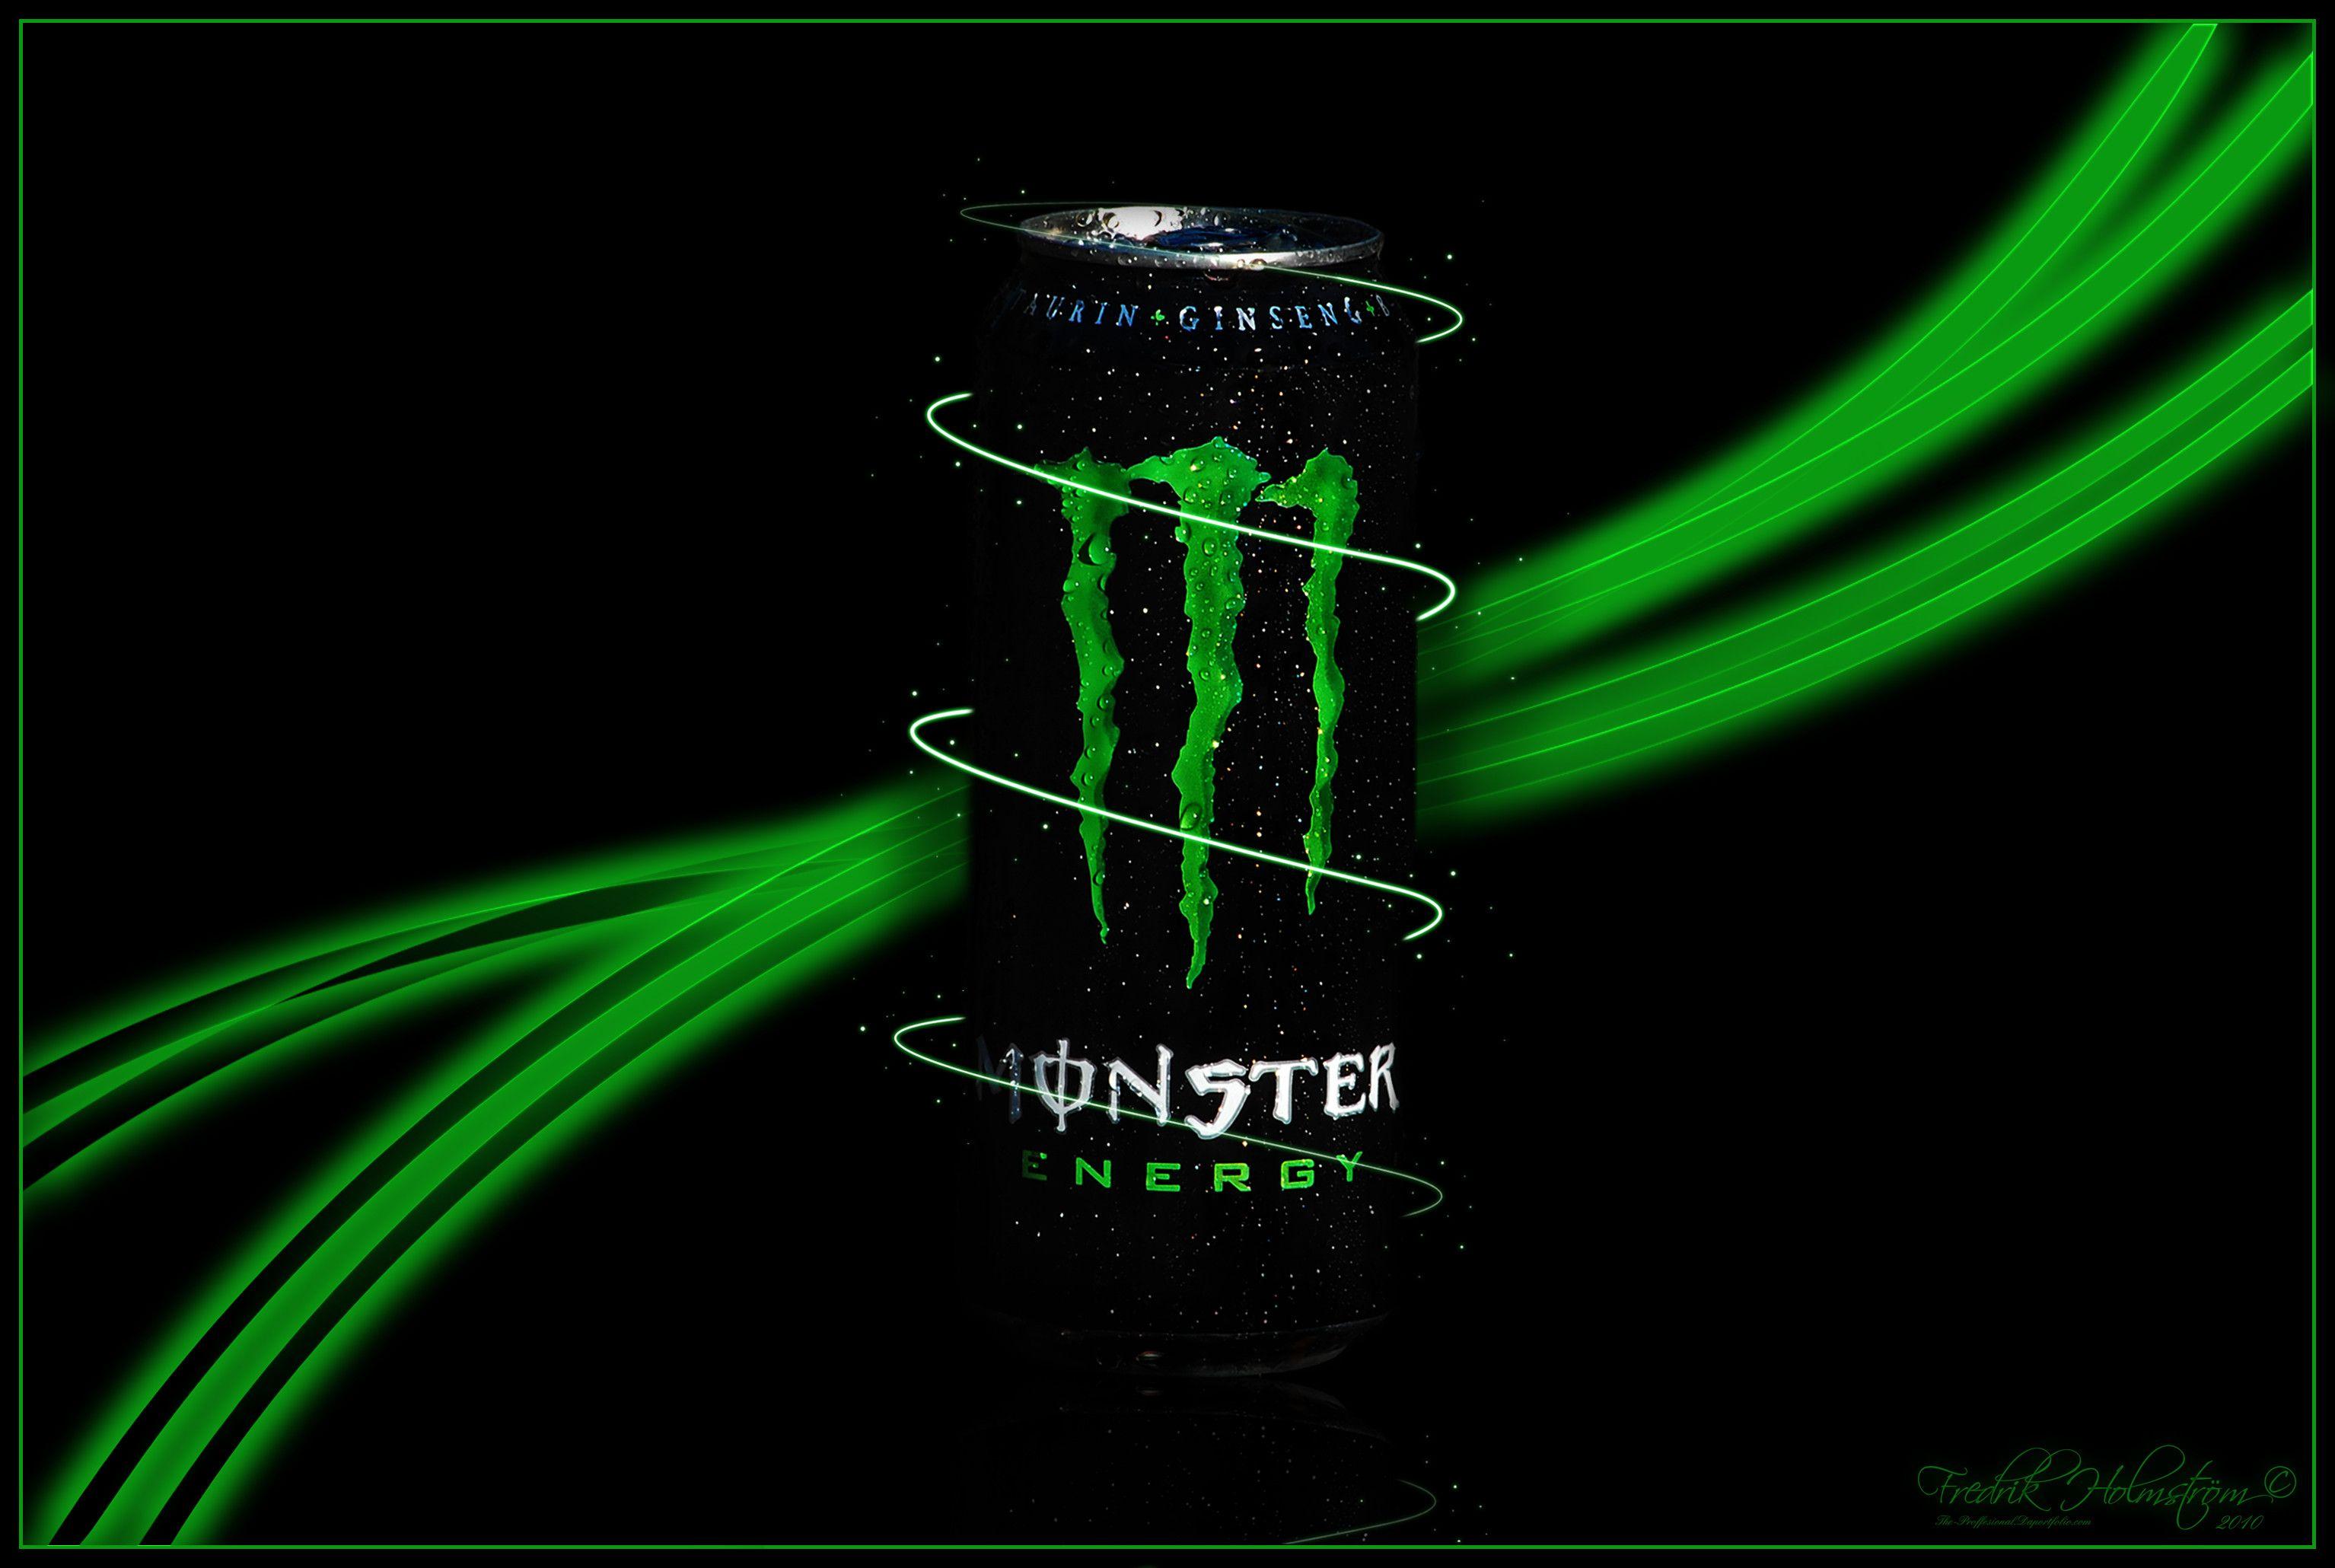 image For > Cool Monster Energy Wallpaper